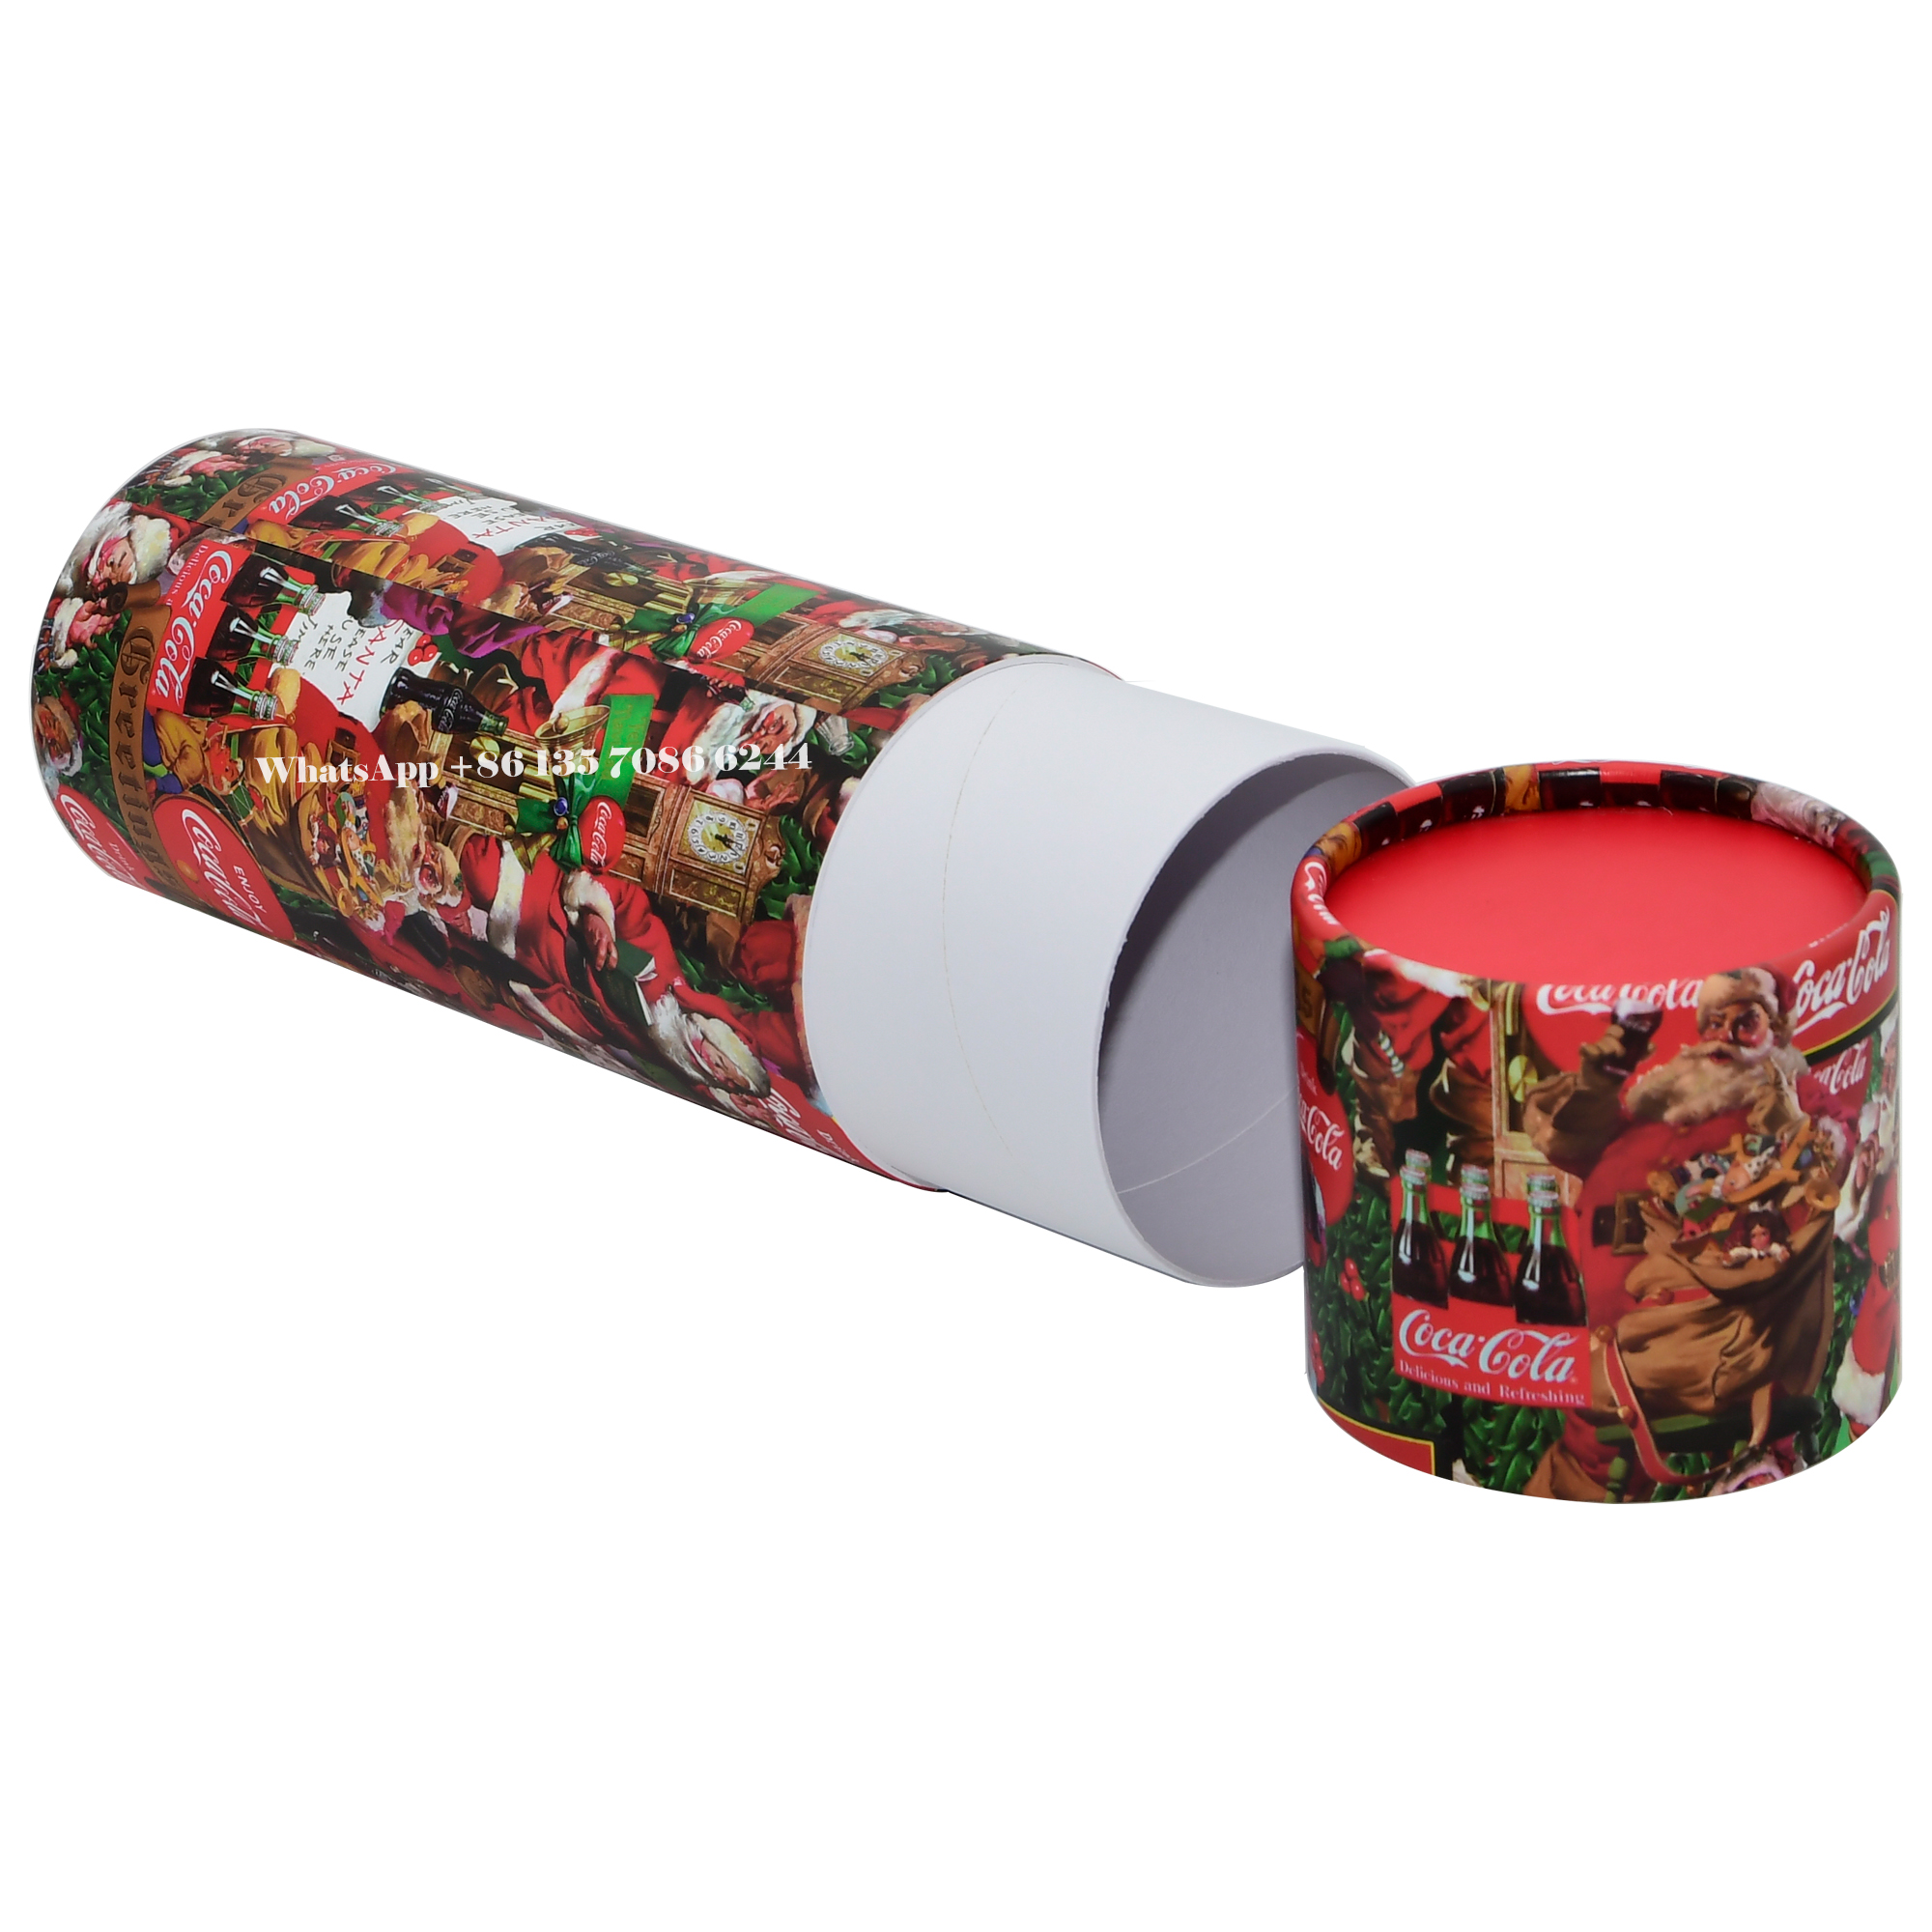  Caixa de embalagem em tubo de papel Coca-Cola Edição Festiva de Natal  